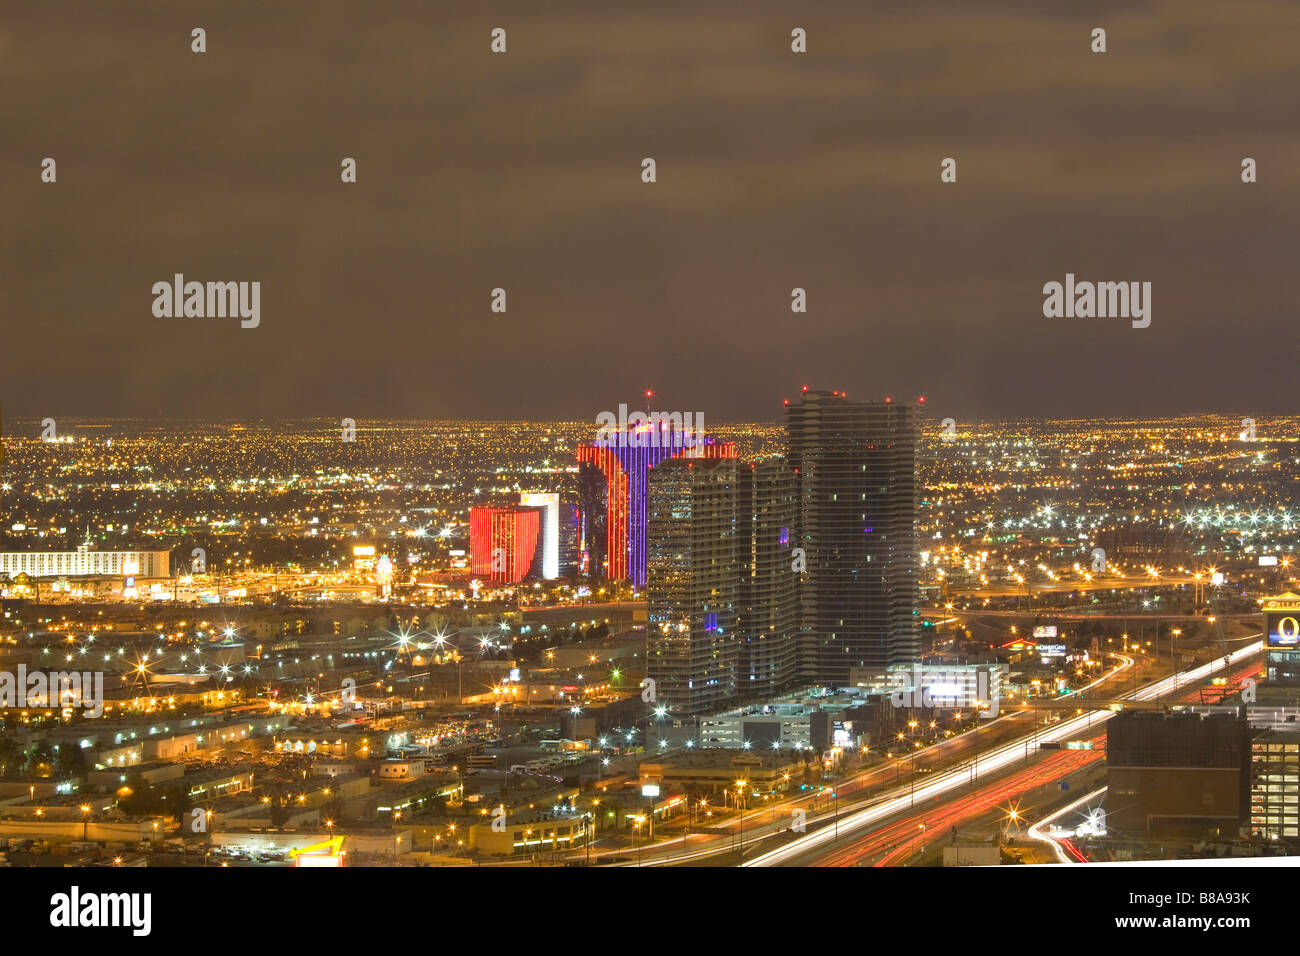 Aerial view of the Las Vegas Strip at night, Las Vegas, Nevada Stock Photo